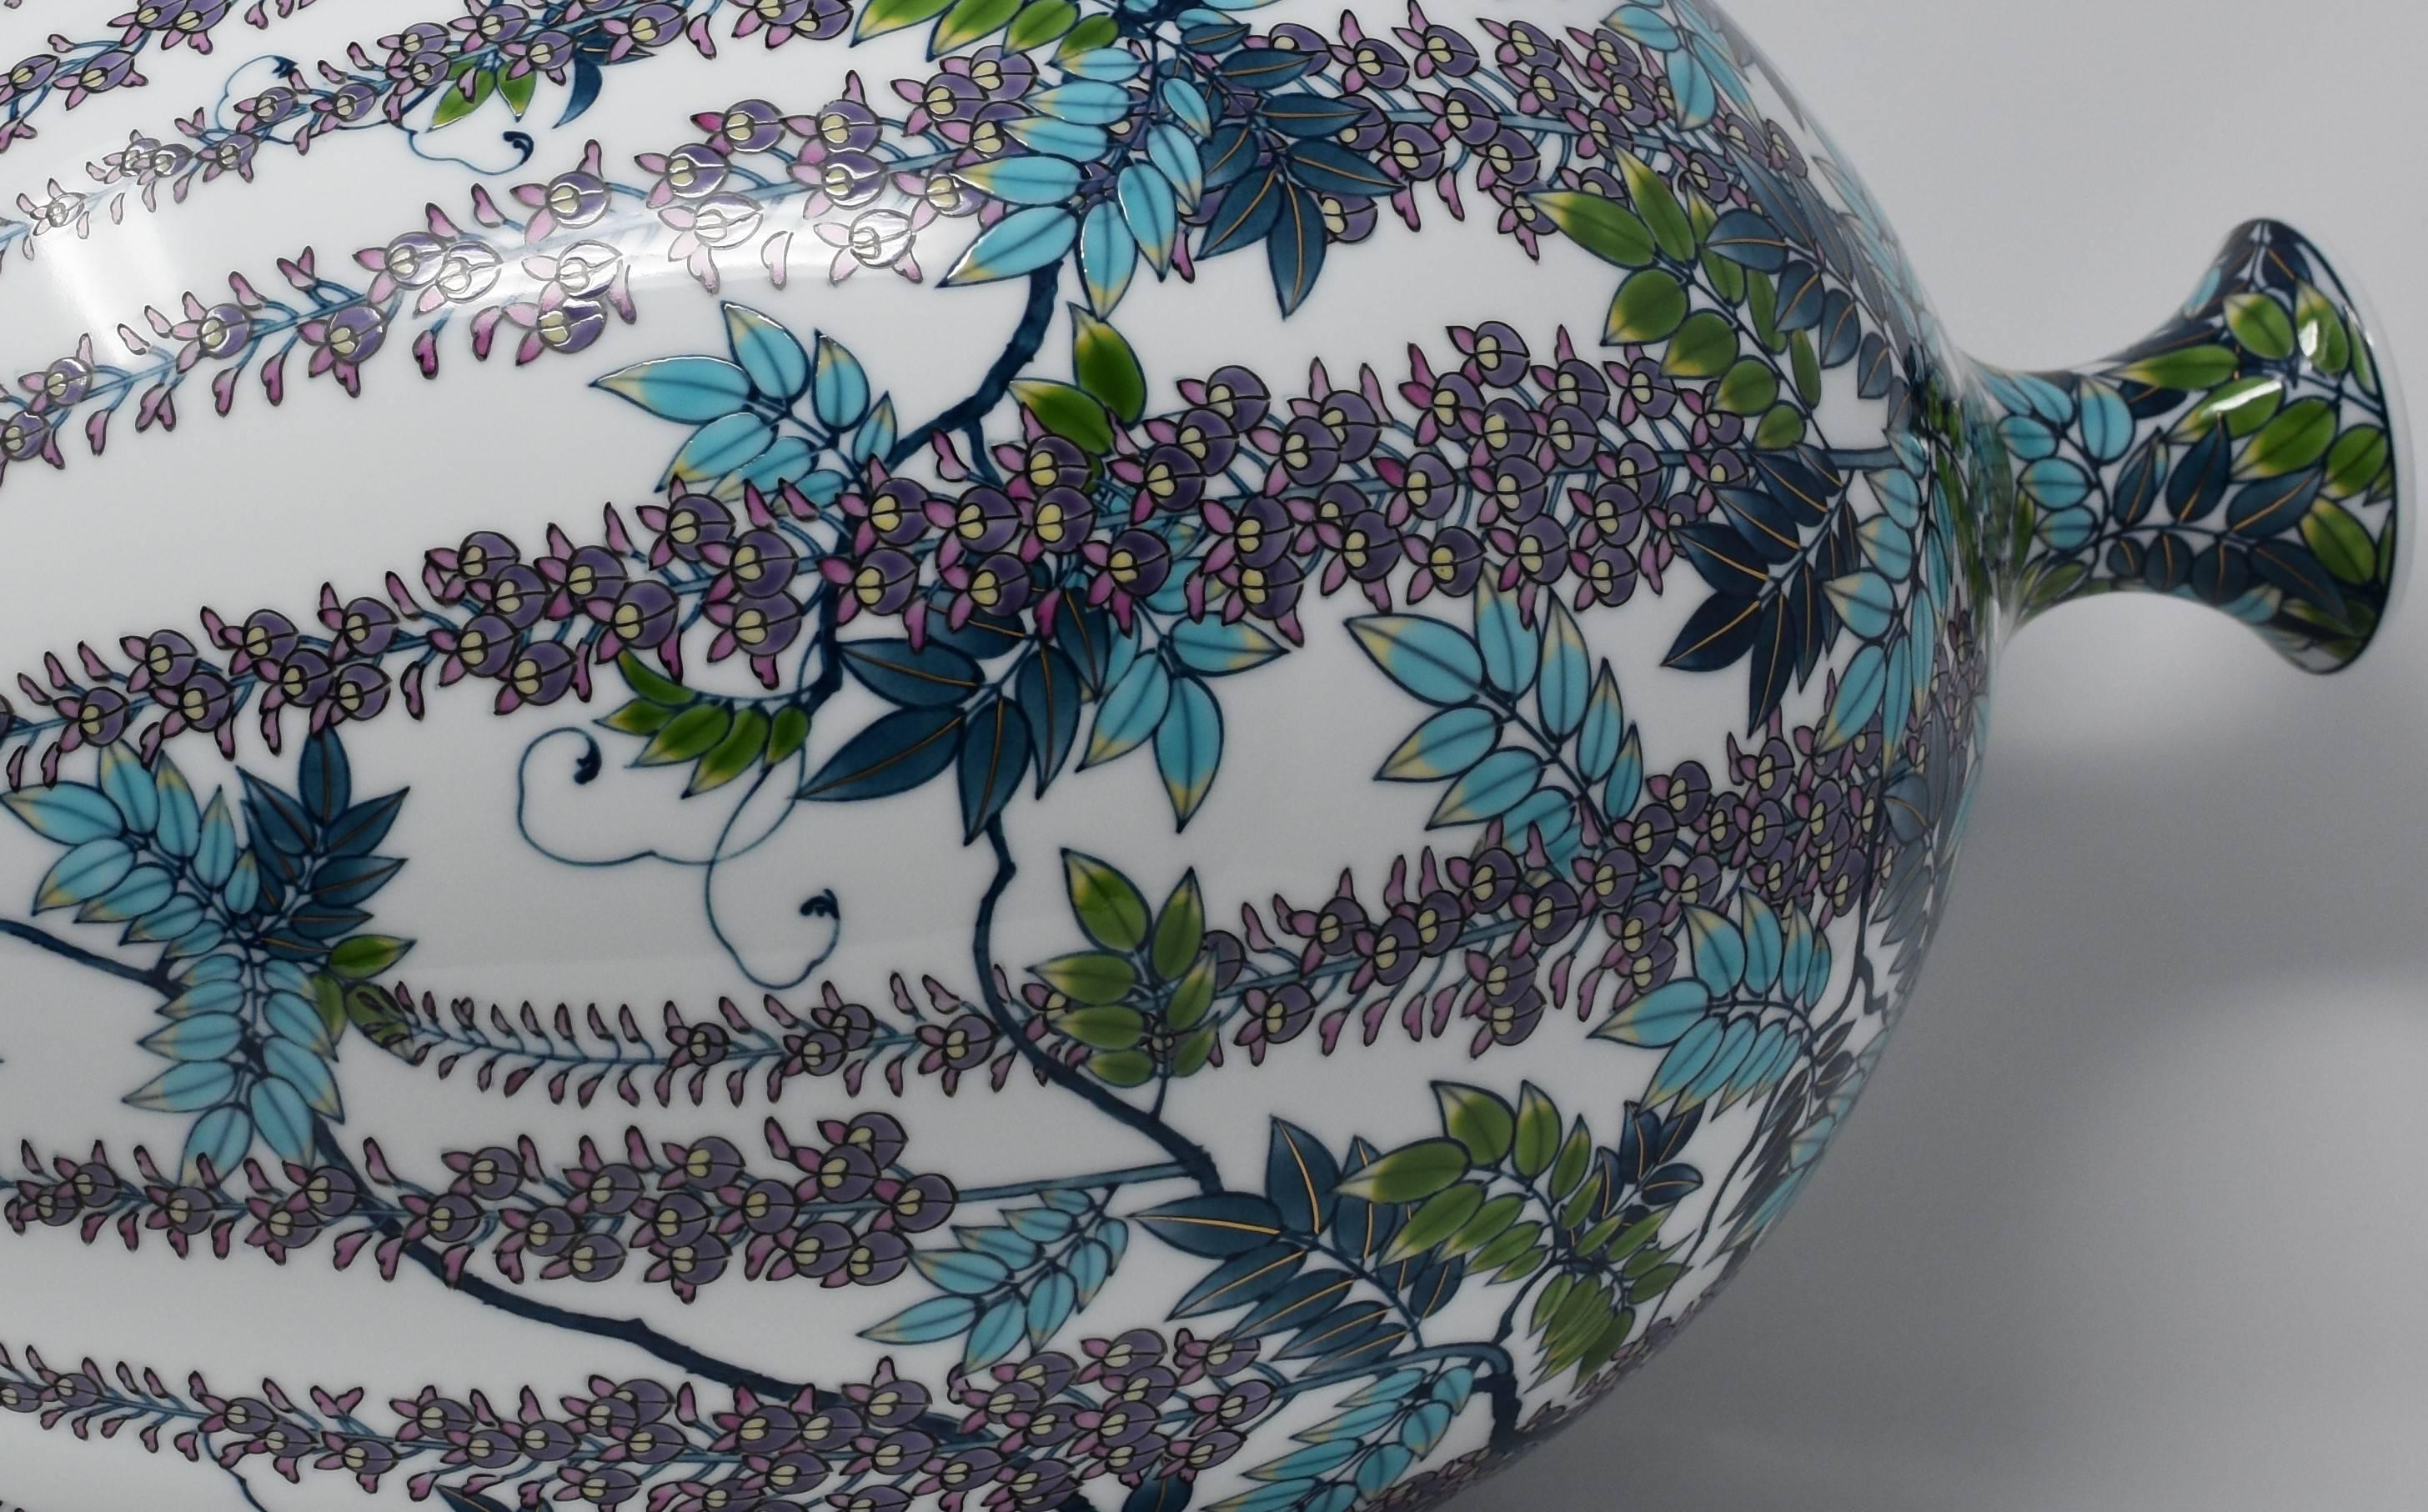 Extraordinaire vase décoratif en porcelaine japonaise contemporaine de qualité muséale, peint à la main de façon extrêmement complexe en bleu turquoise et violet, signature de l'artiste, sur un corps en porcelaine de forme balustre. Il s'agit d'un